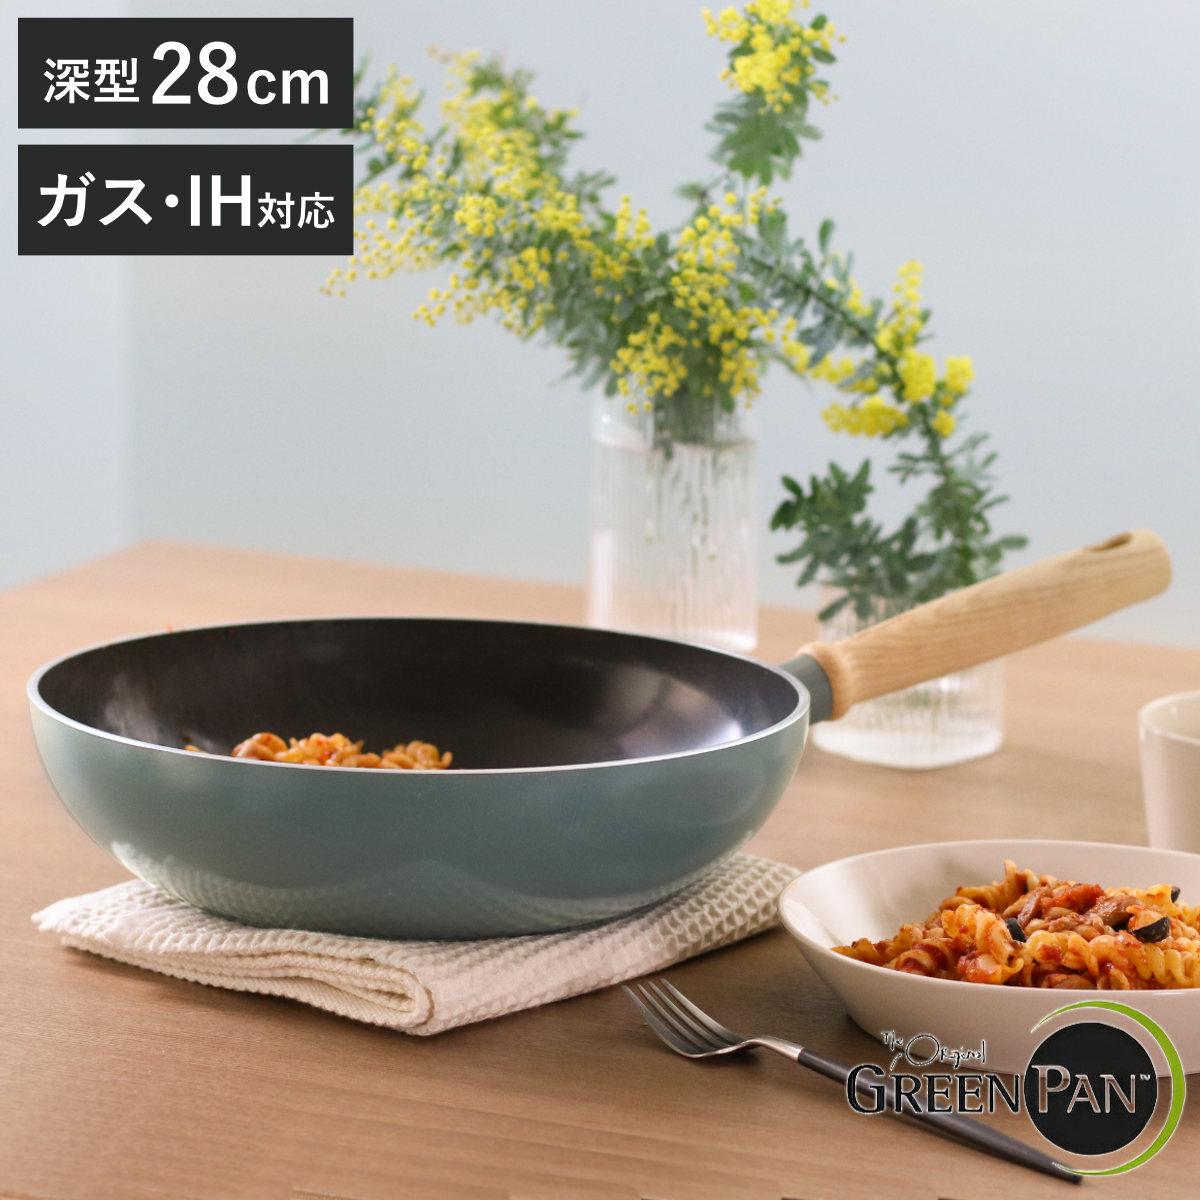 GREEN PAN ウォックパン 28cm IH対応 MAY FLOWER 深型フライパン